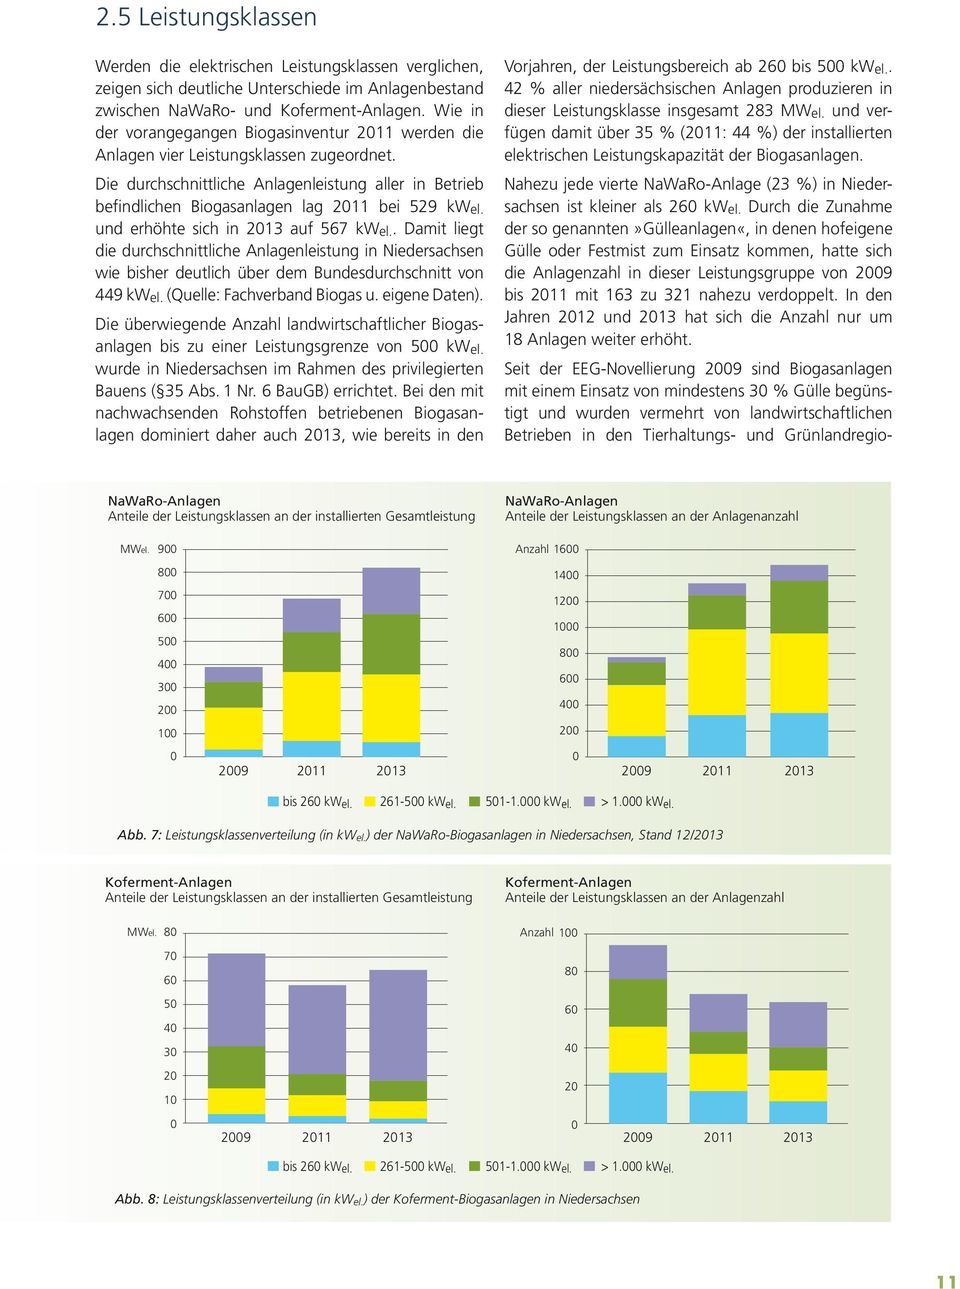 Die durchschnittliche Anlagenleistung aller in Betrieb befindlichen Biogasanlagen lag 2011 bei 529 kw el. und erhöhte sich in 2013 auf 567 kwel.